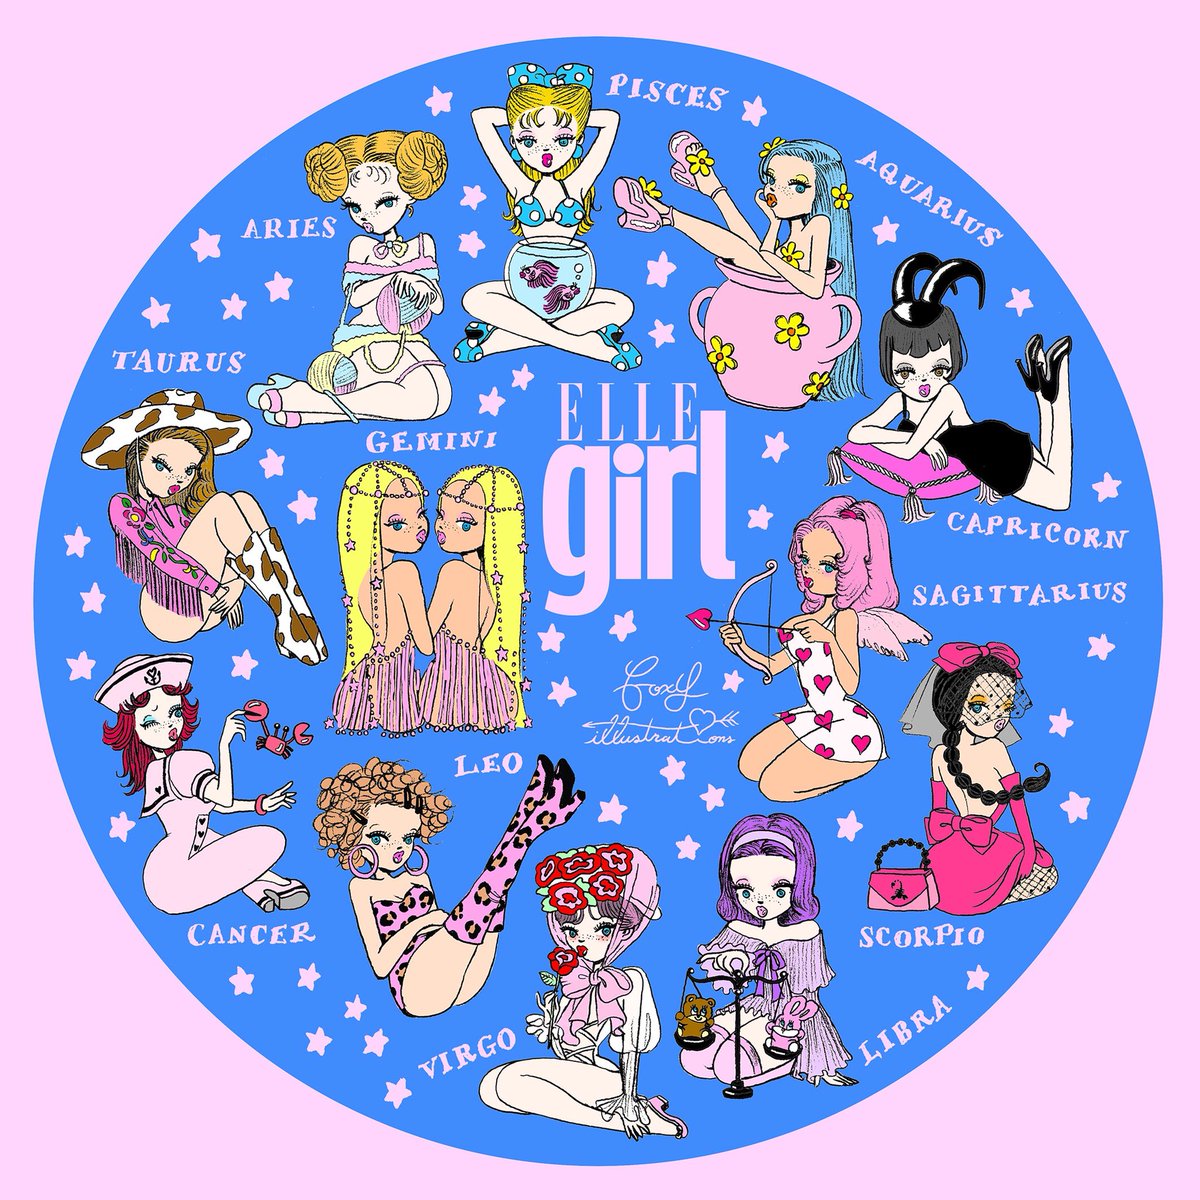 Foxy Illustrations 在 Twitter 上 For Elle Girl 12星座のイラストを描きました あなたはどの女の子 T Co 5csumtbzlu Twitter